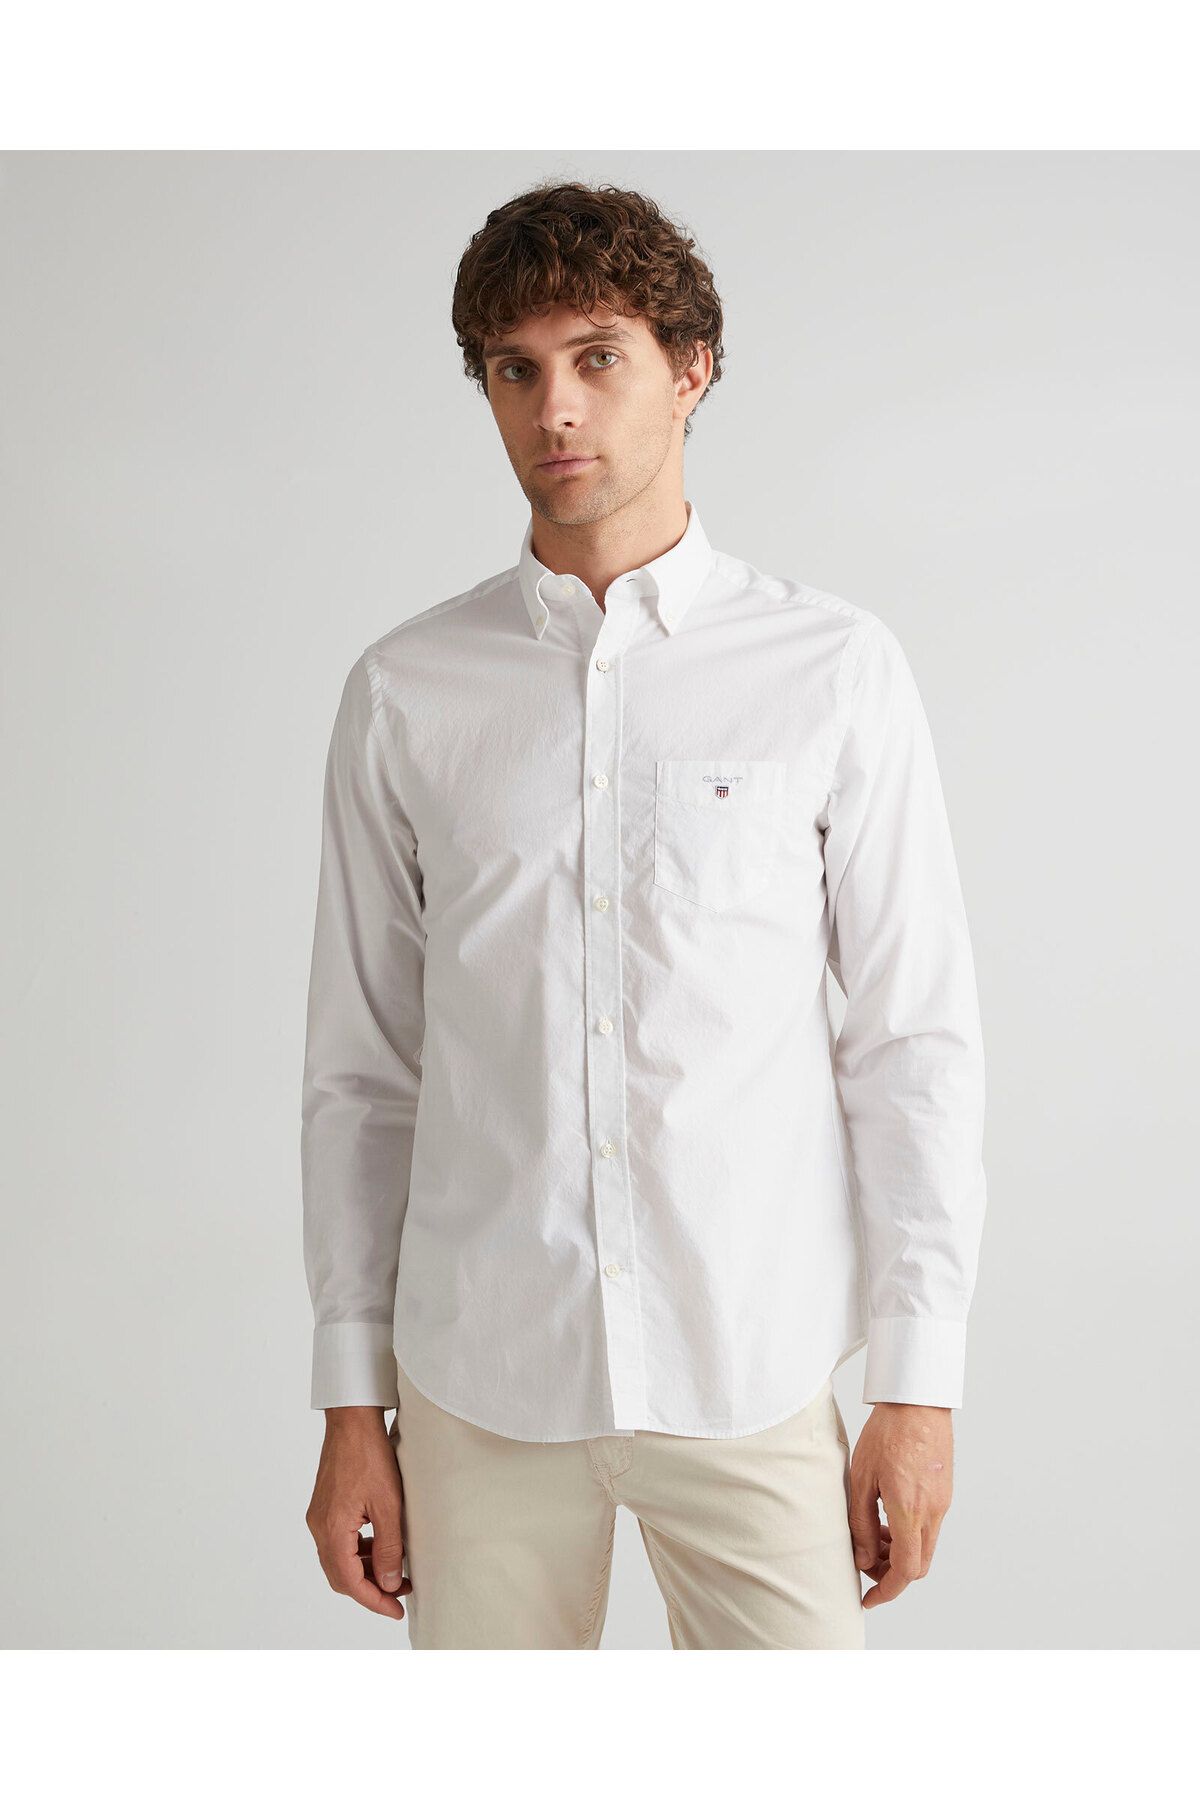 Gant Erkek Beyaz Regular Fit Düğmeli Yaka Broadcloth Gömlek